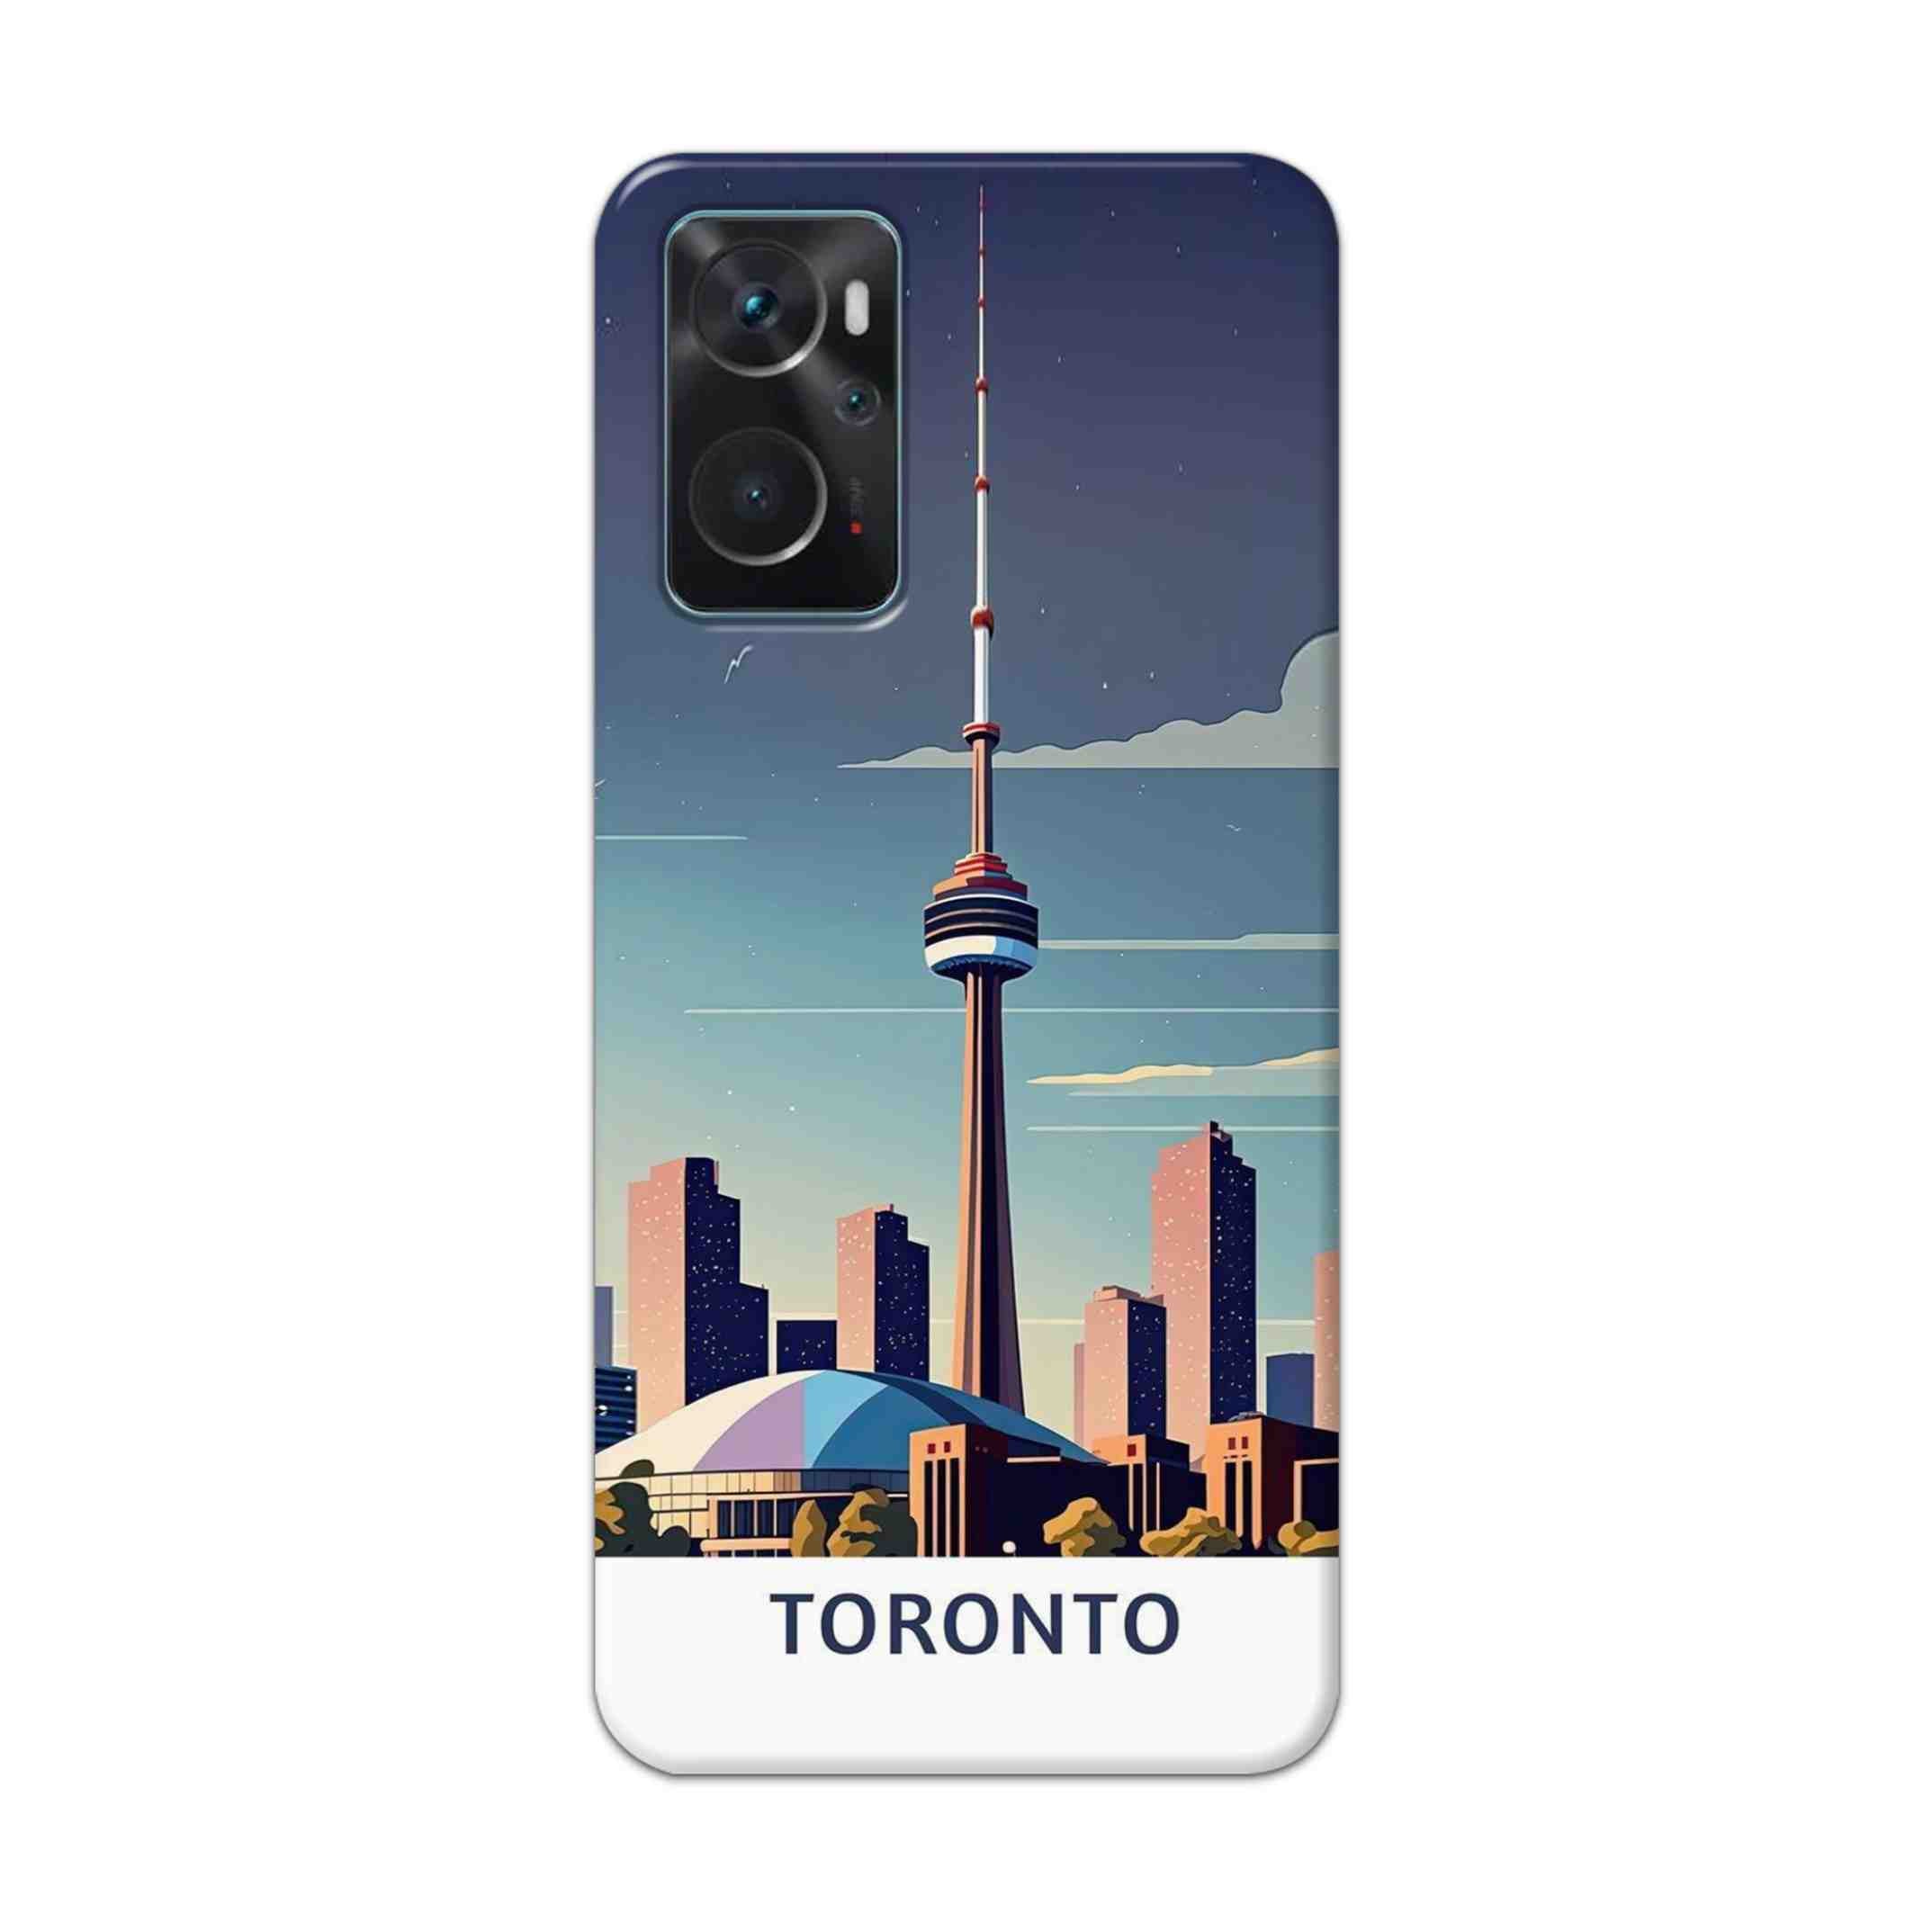 Buy Toronto Hard Back Mobile Phone Case Cover For Oppo K10 Online